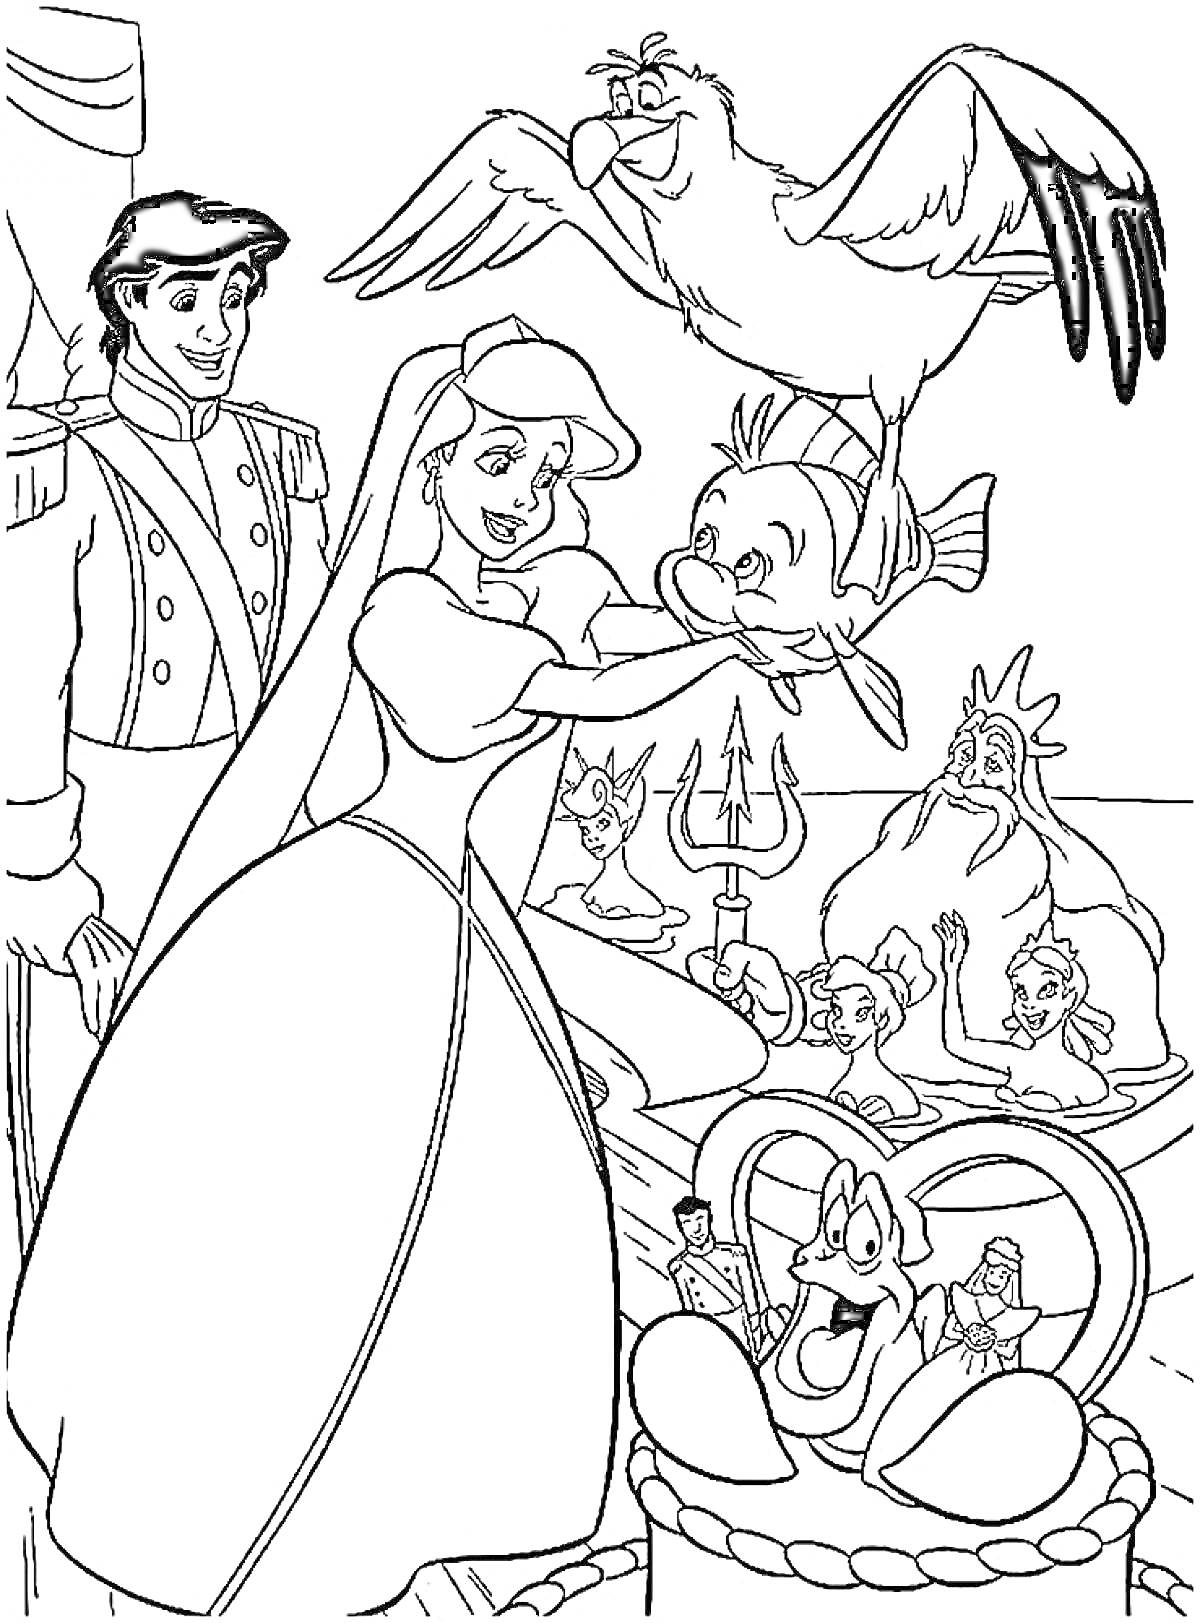 Раскраска Ариэль с друзьями - принц, чайка, рыбка, морской лев и краб на корабле